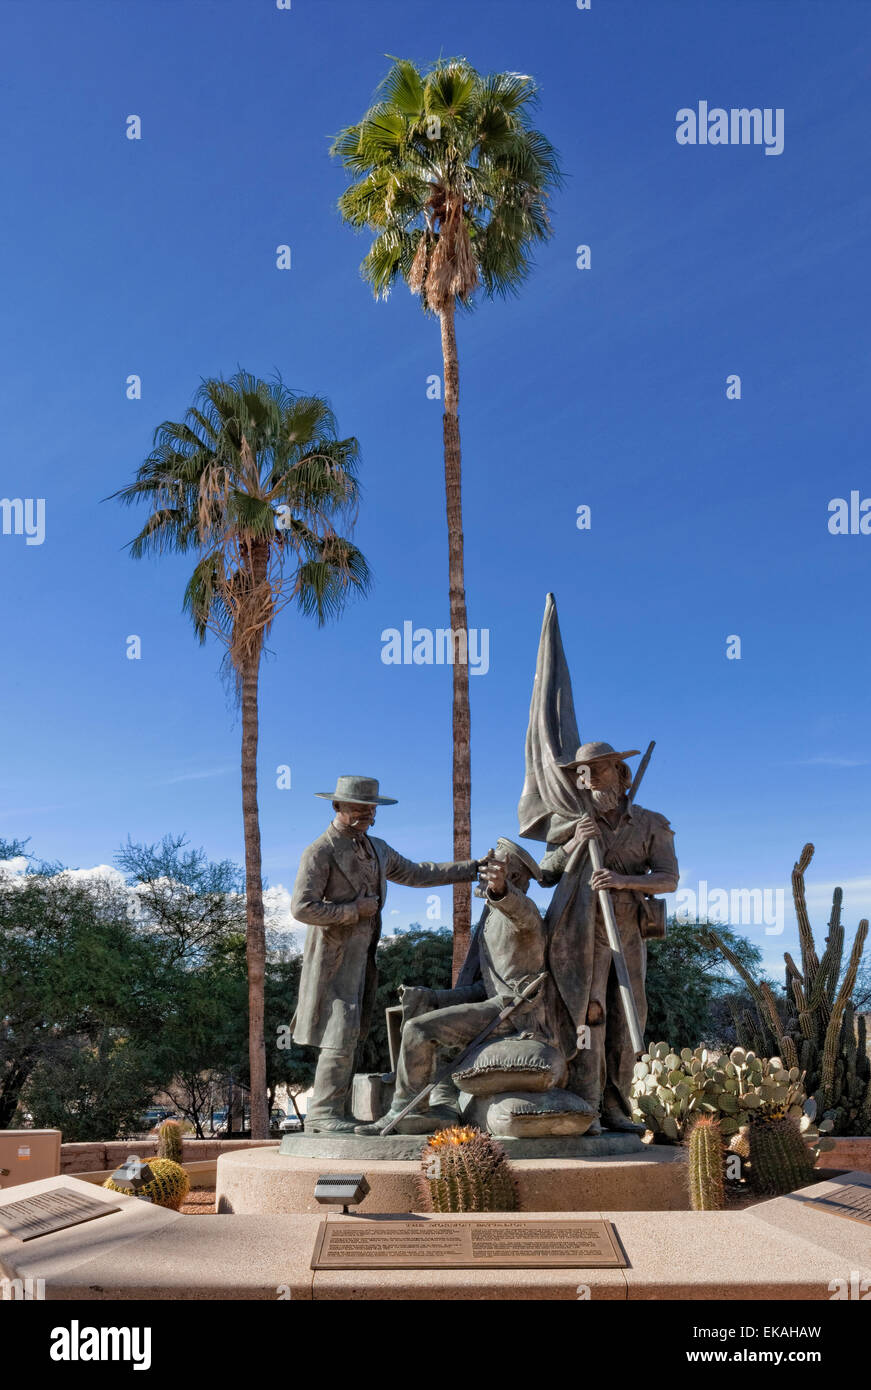 Batallón Mormón estatua en Tucson, AZ. El Batallón Mormón, la única unidad religiosa en la historia militar de los Estados Unidos. Foto de stock